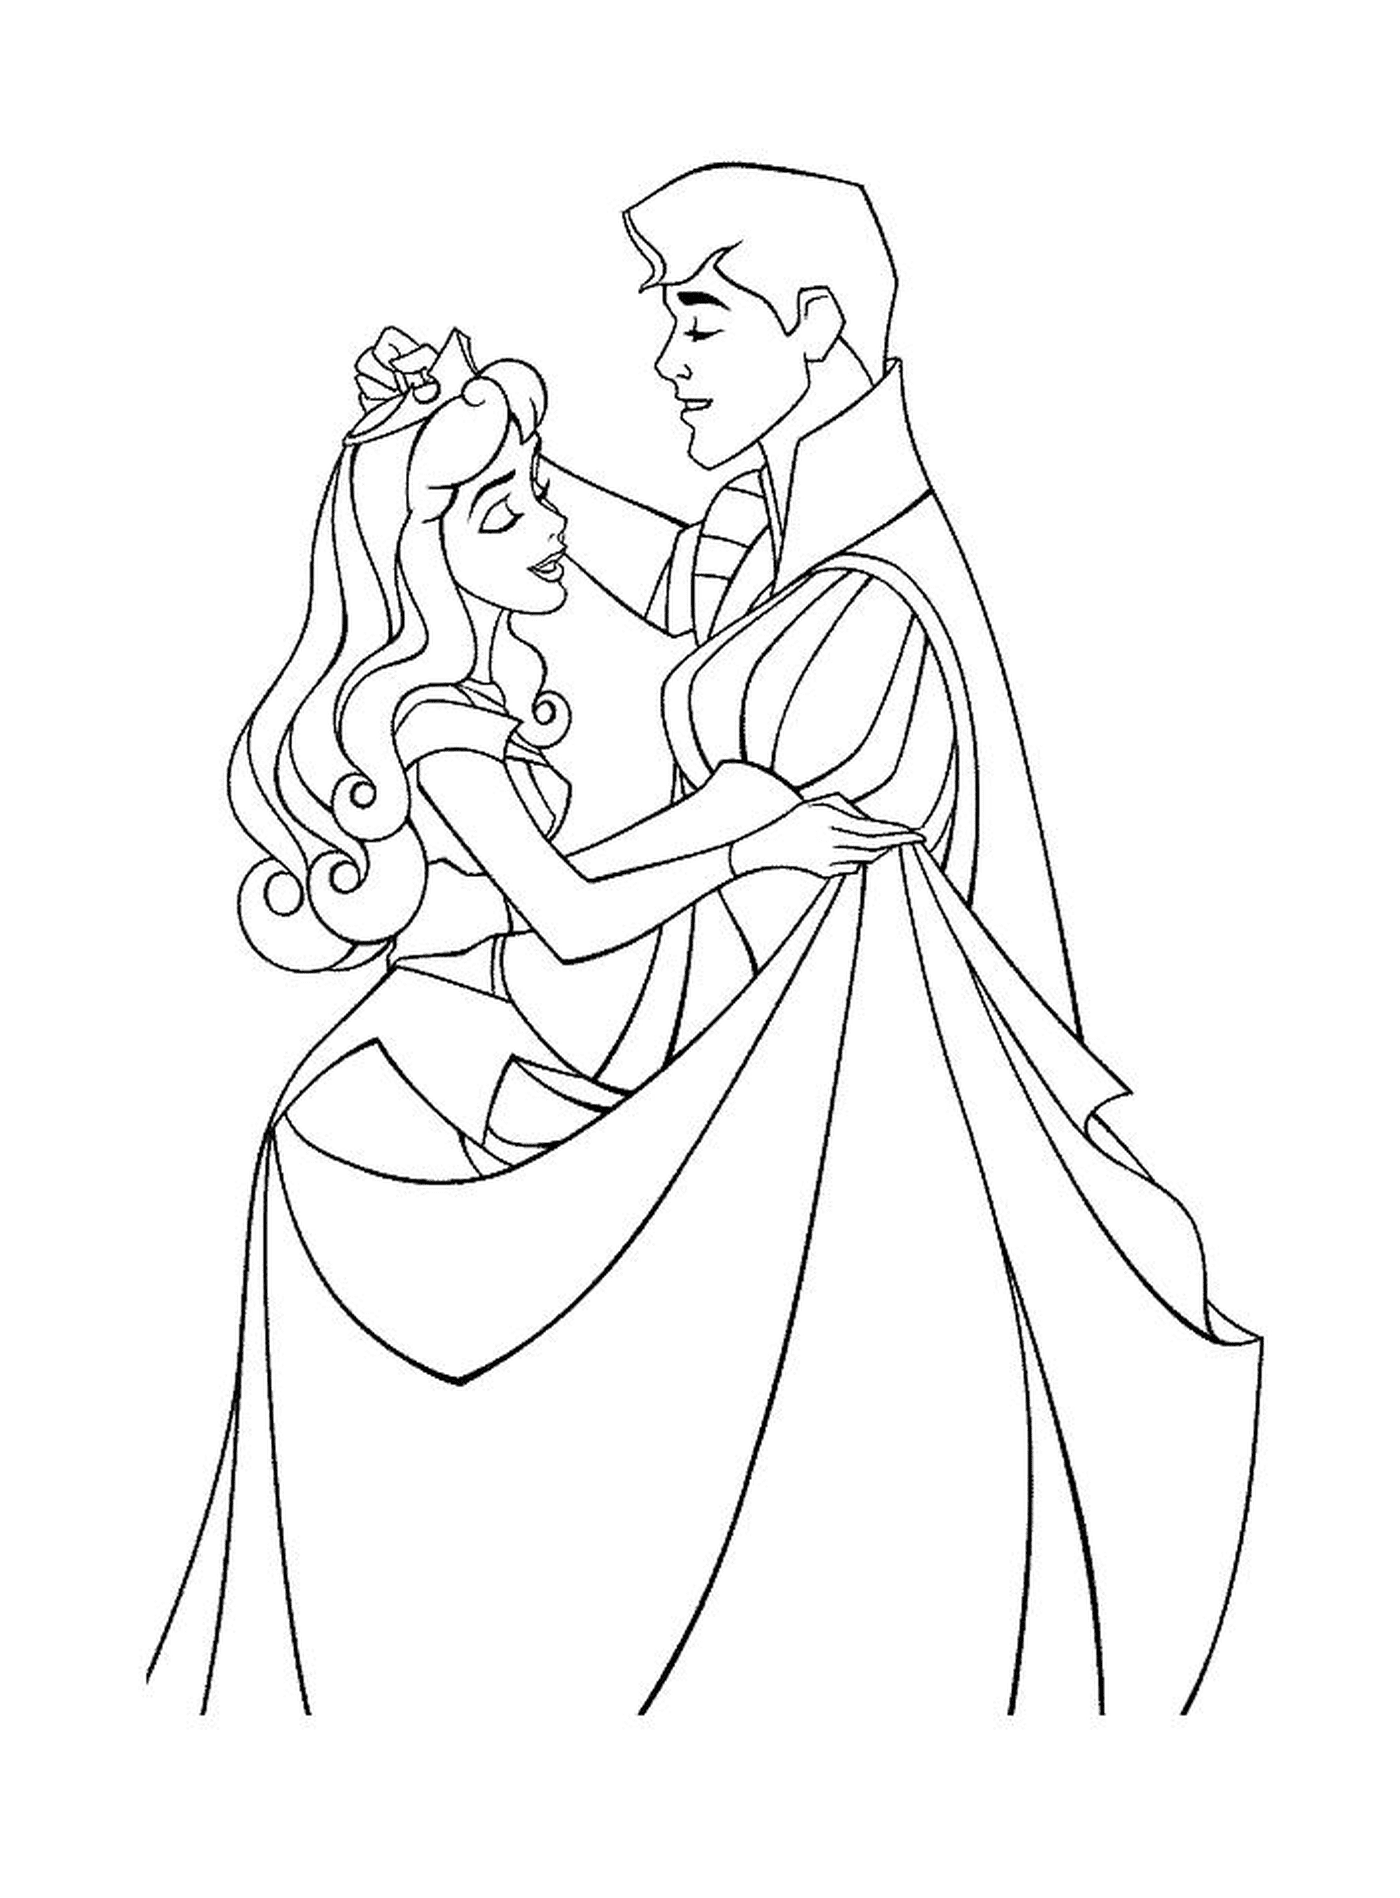   Aurore danse avec son prince charmant 